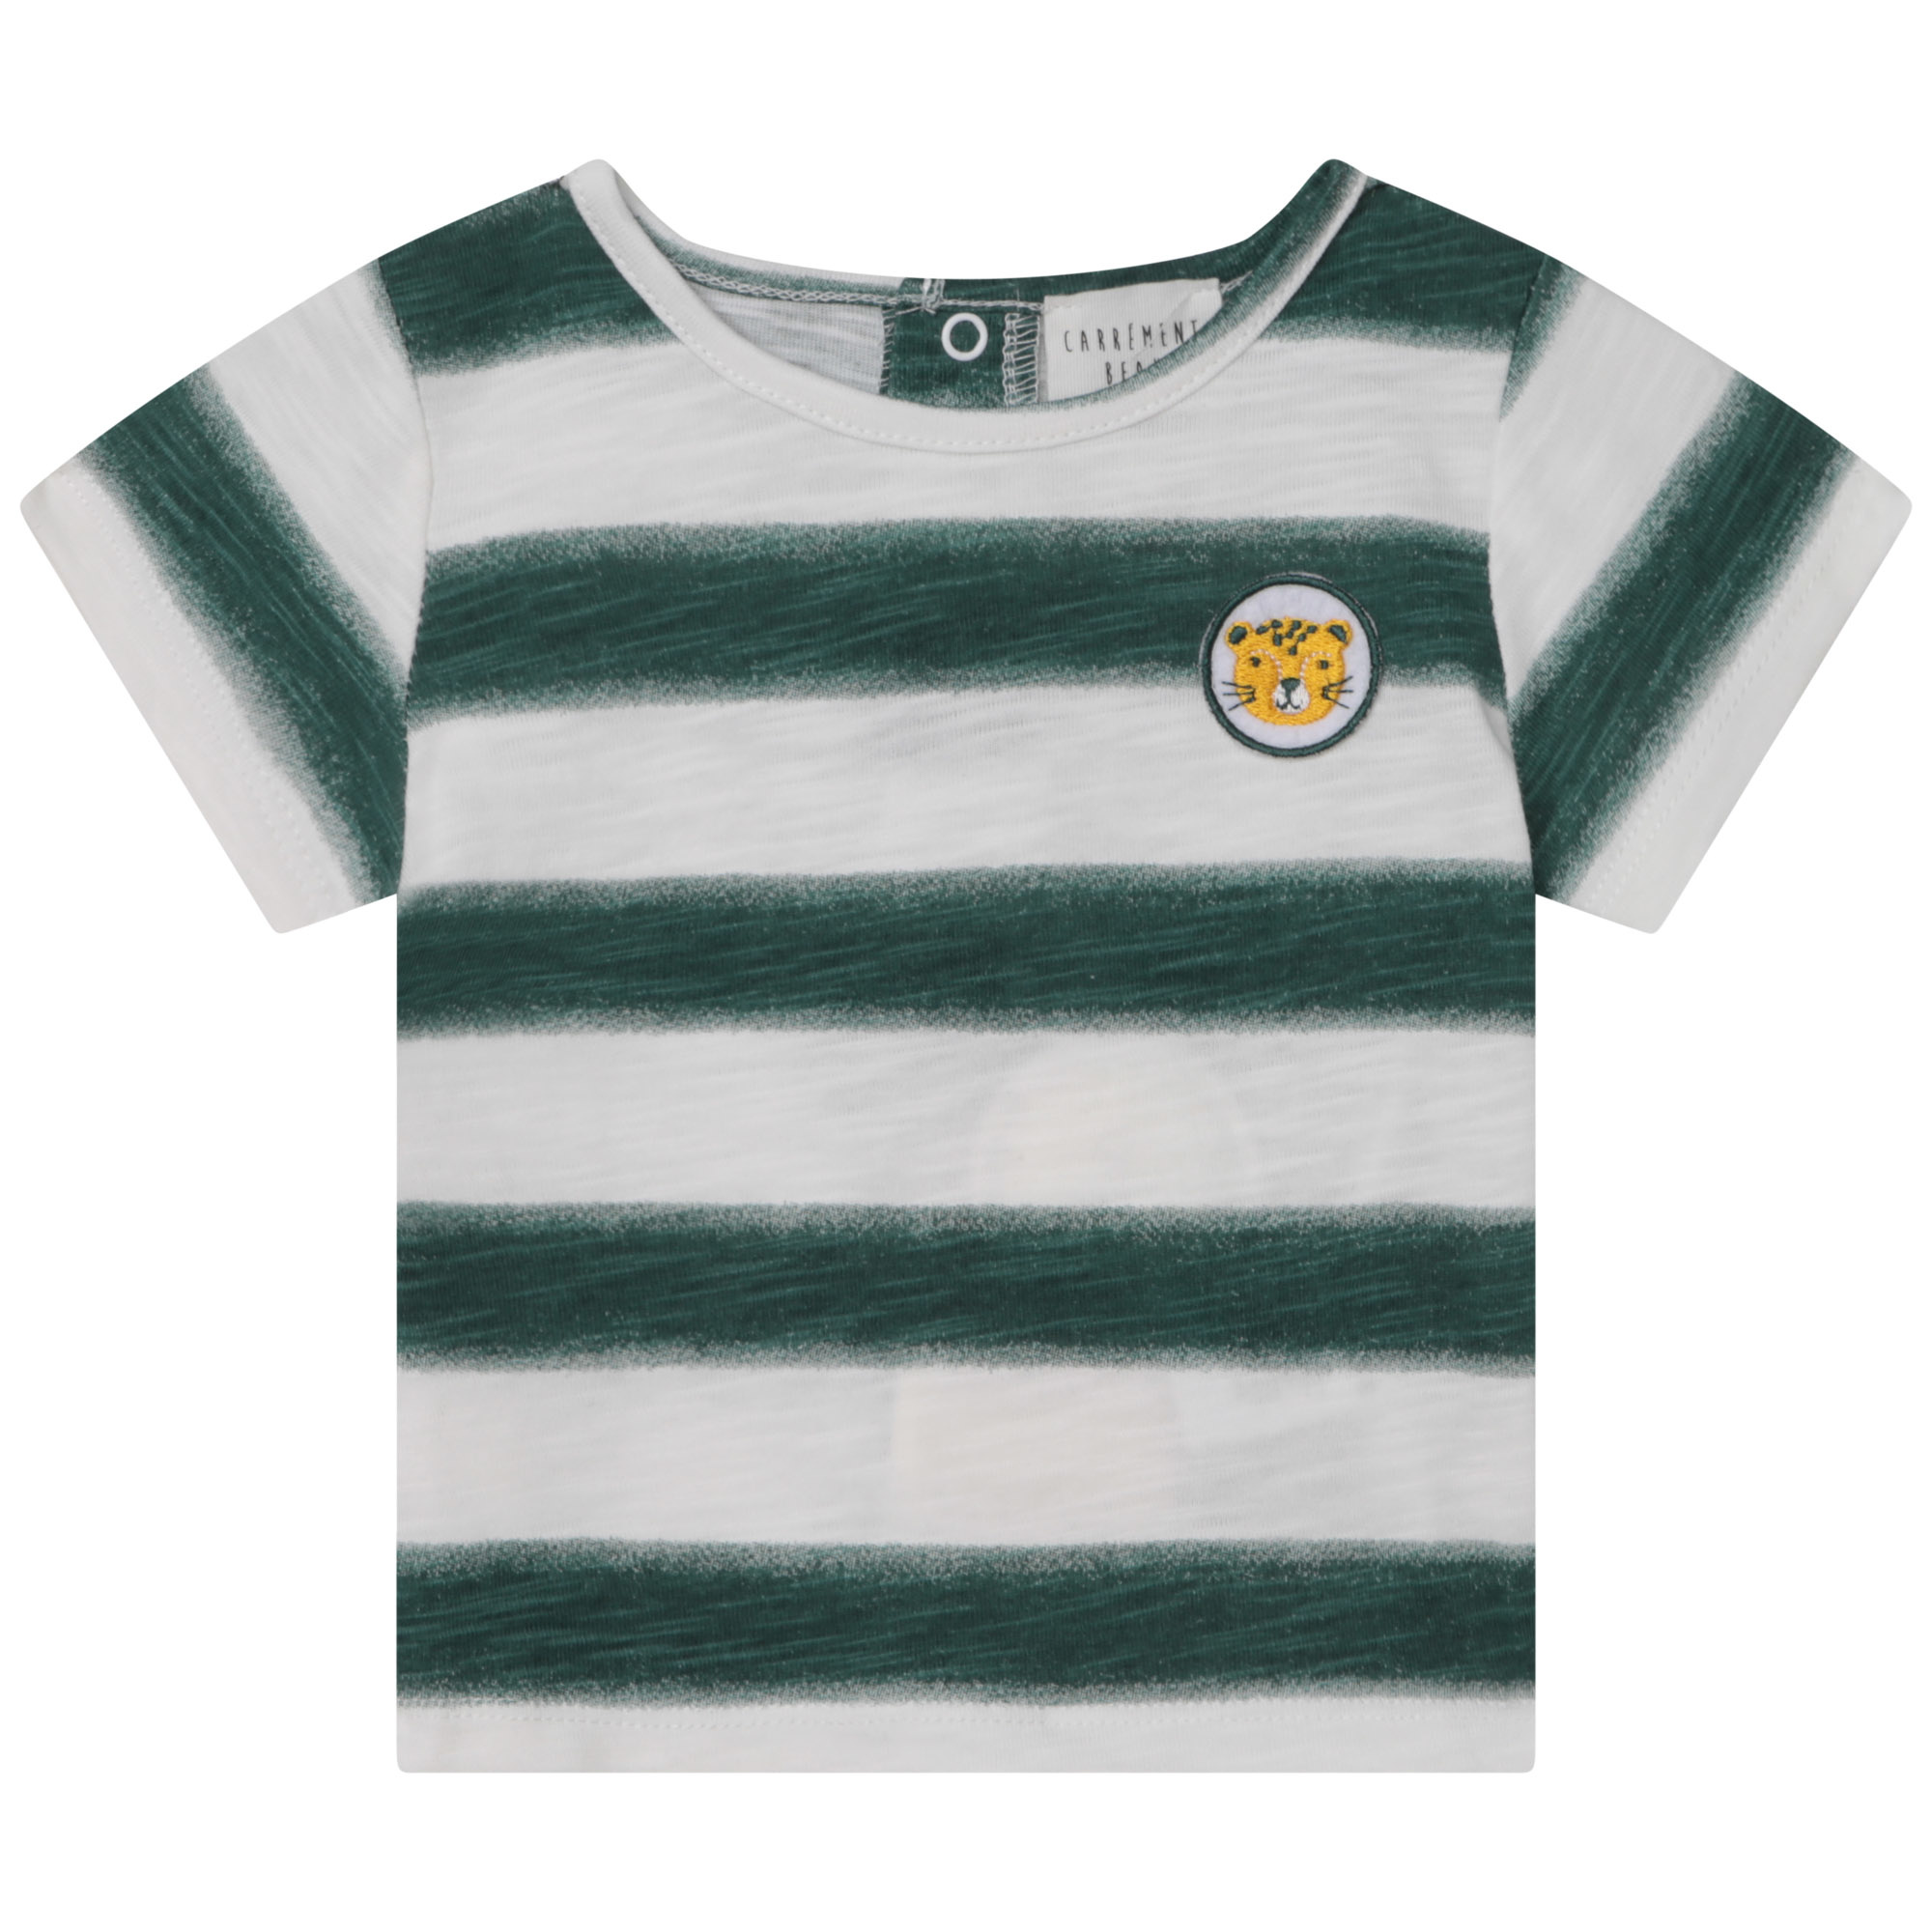 Carrement Beau Carrement beau- Striped T-Shirt